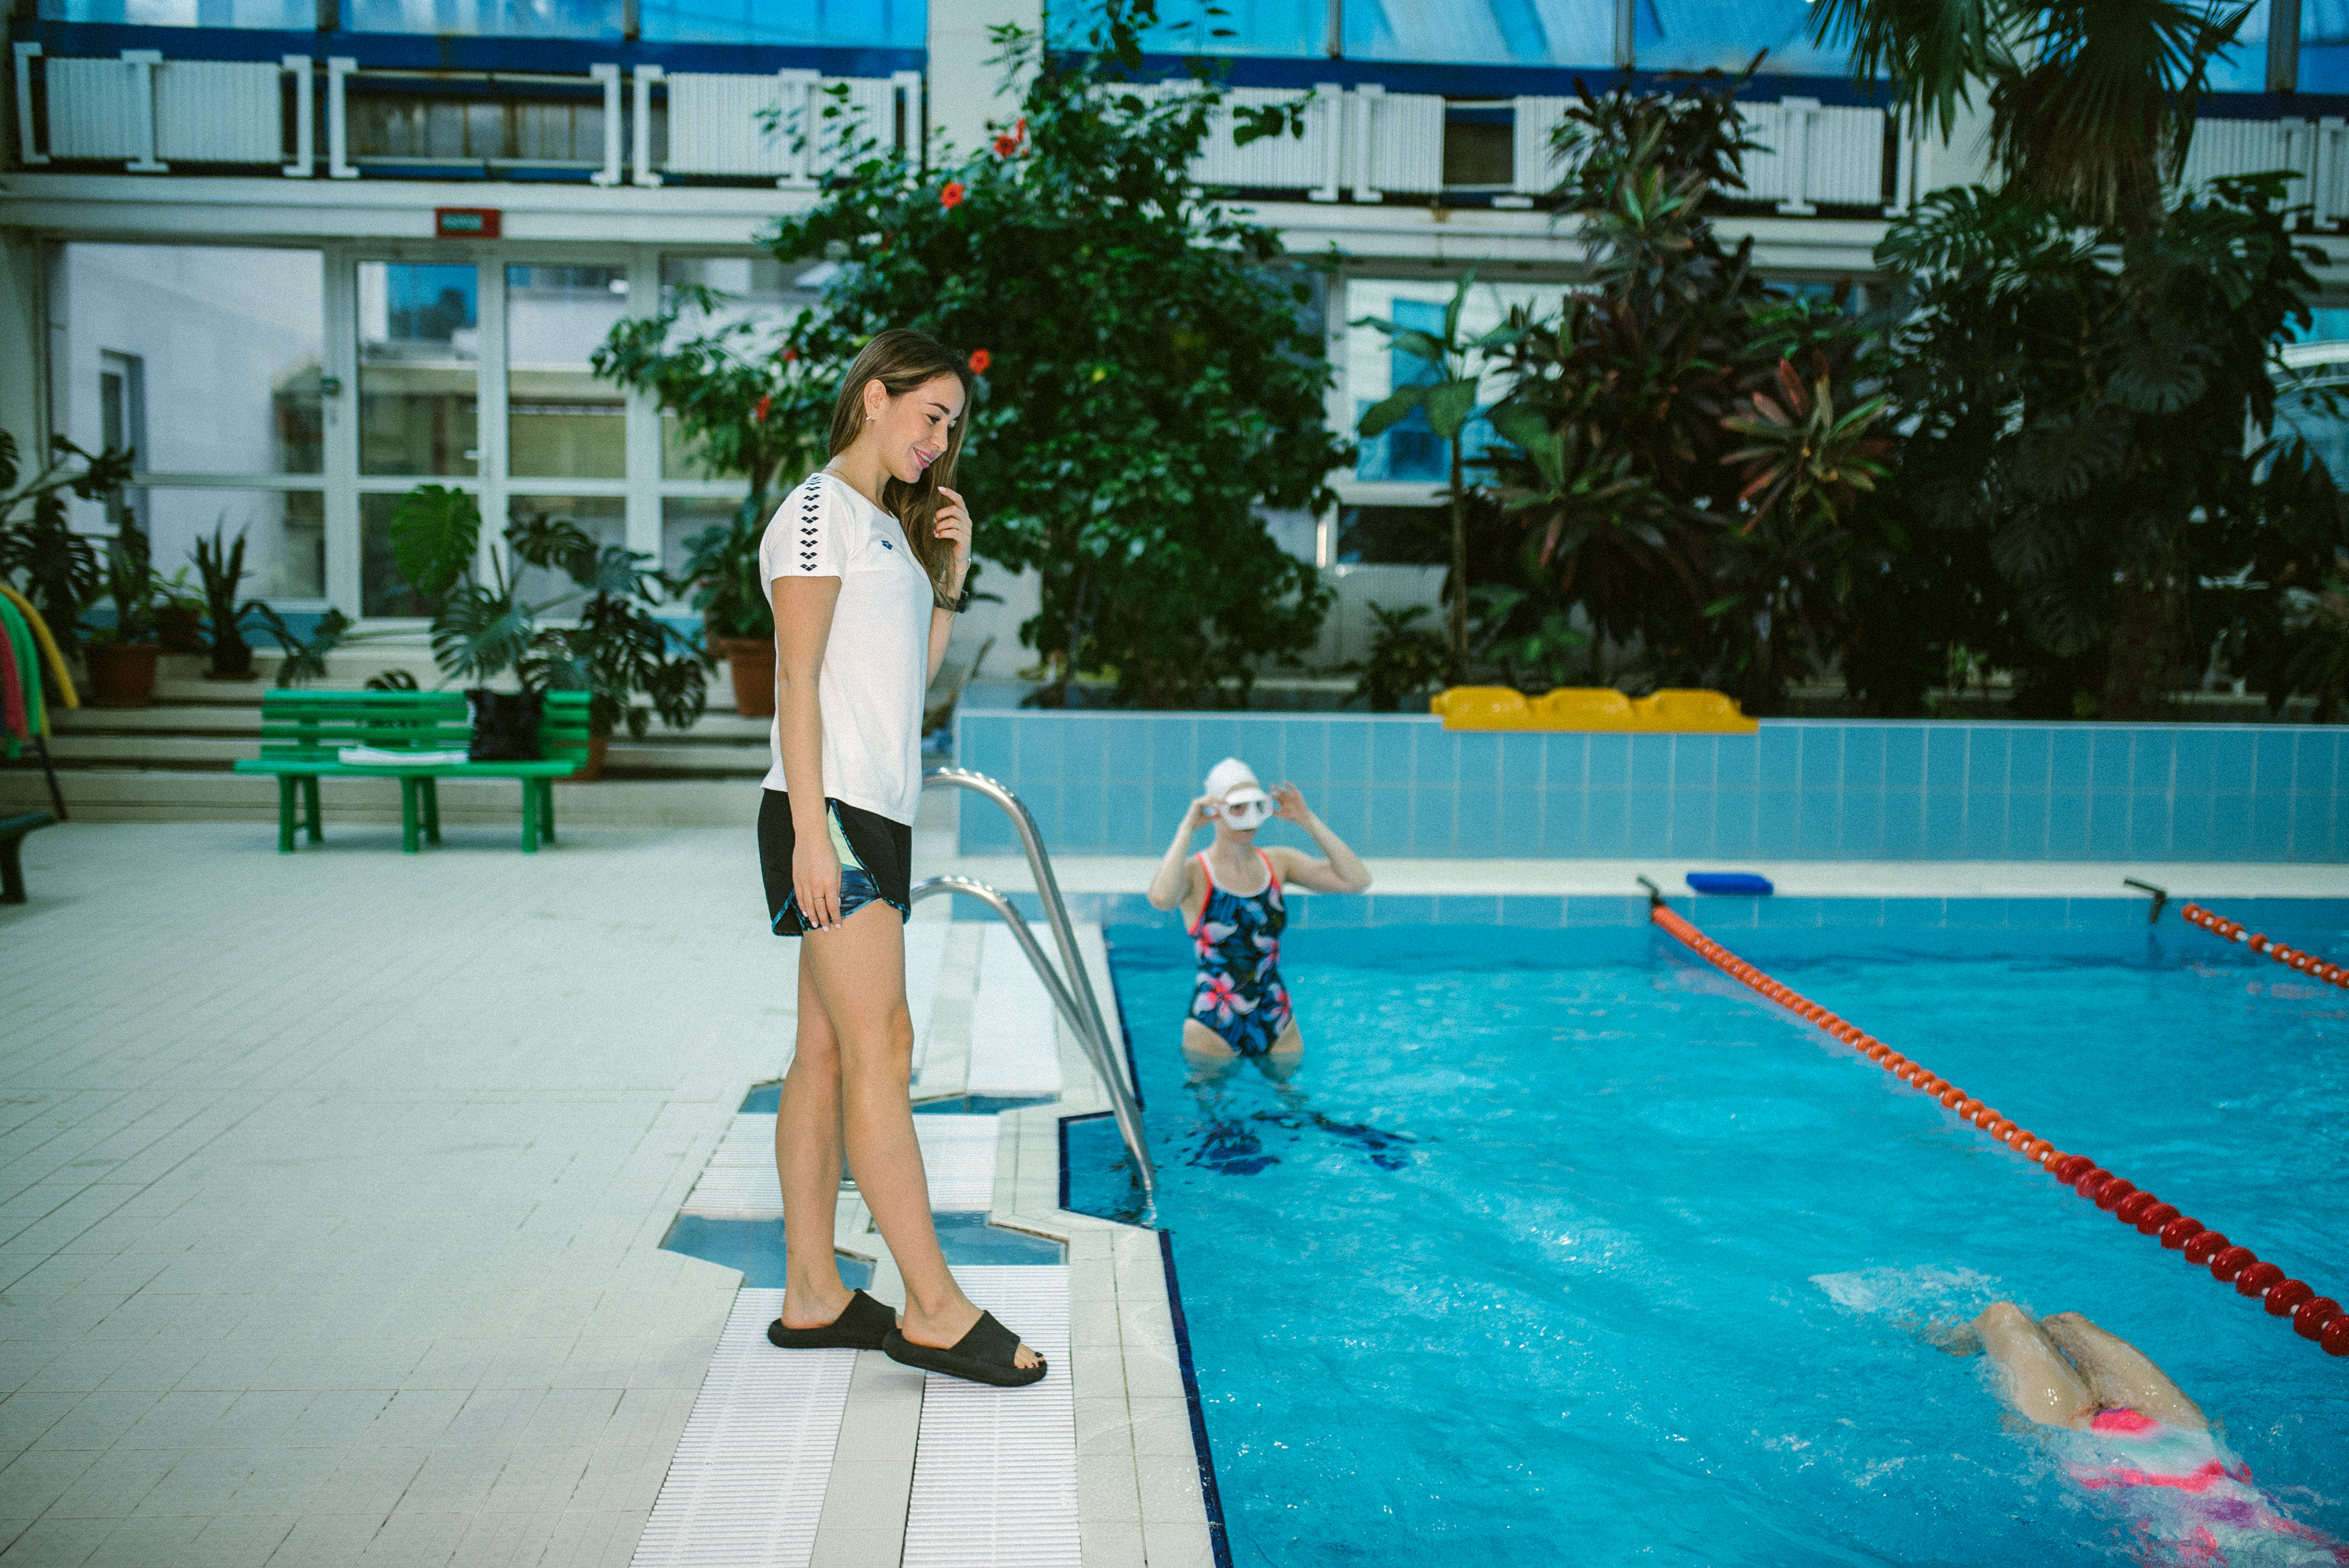 В свободном плавании. Как девушка из Ульяновска открыла в Минске клуб фридайвинга во время пандемии